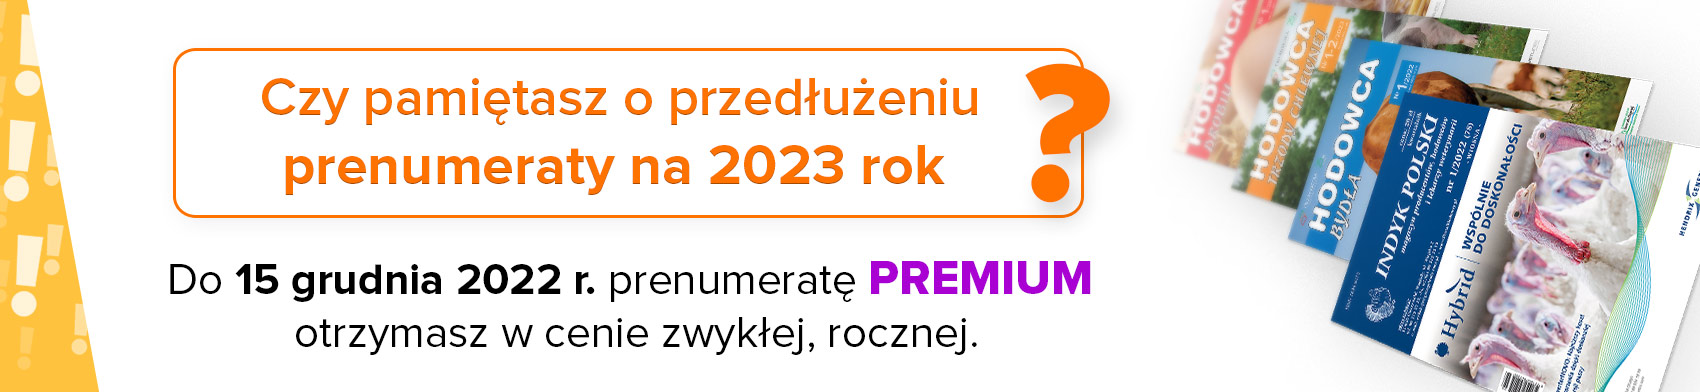 Prenumerata_2023